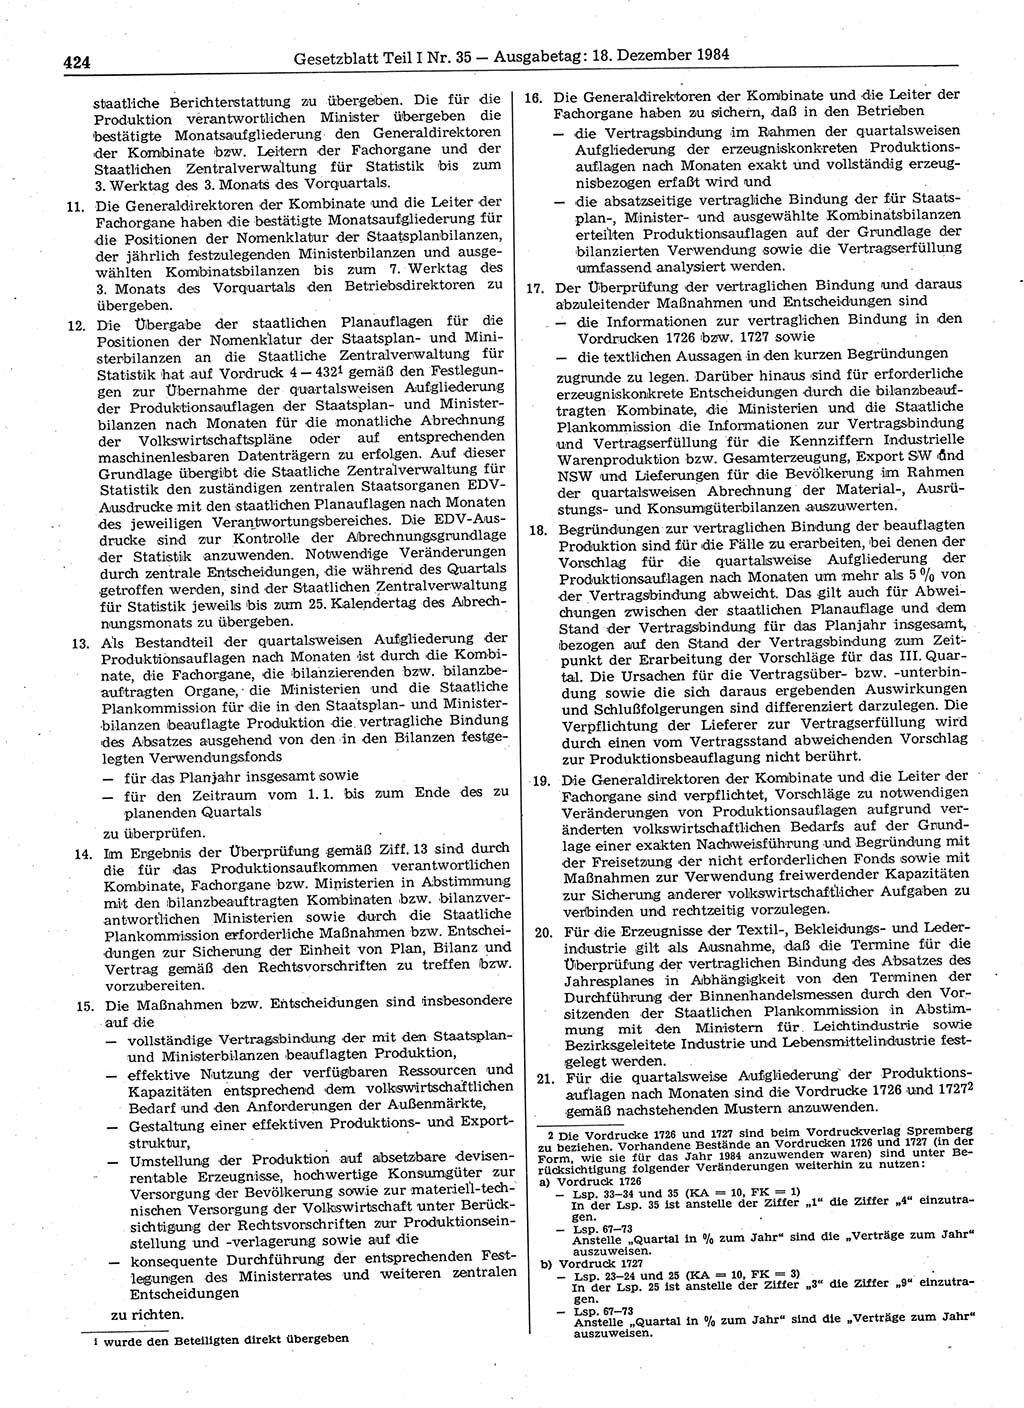 Gesetzblatt (GBl.) der Deutschen Demokratischen Republik (DDR) Teil Ⅰ 1984, Seite 424 (GBl. DDR Ⅰ 1984, S. 424)